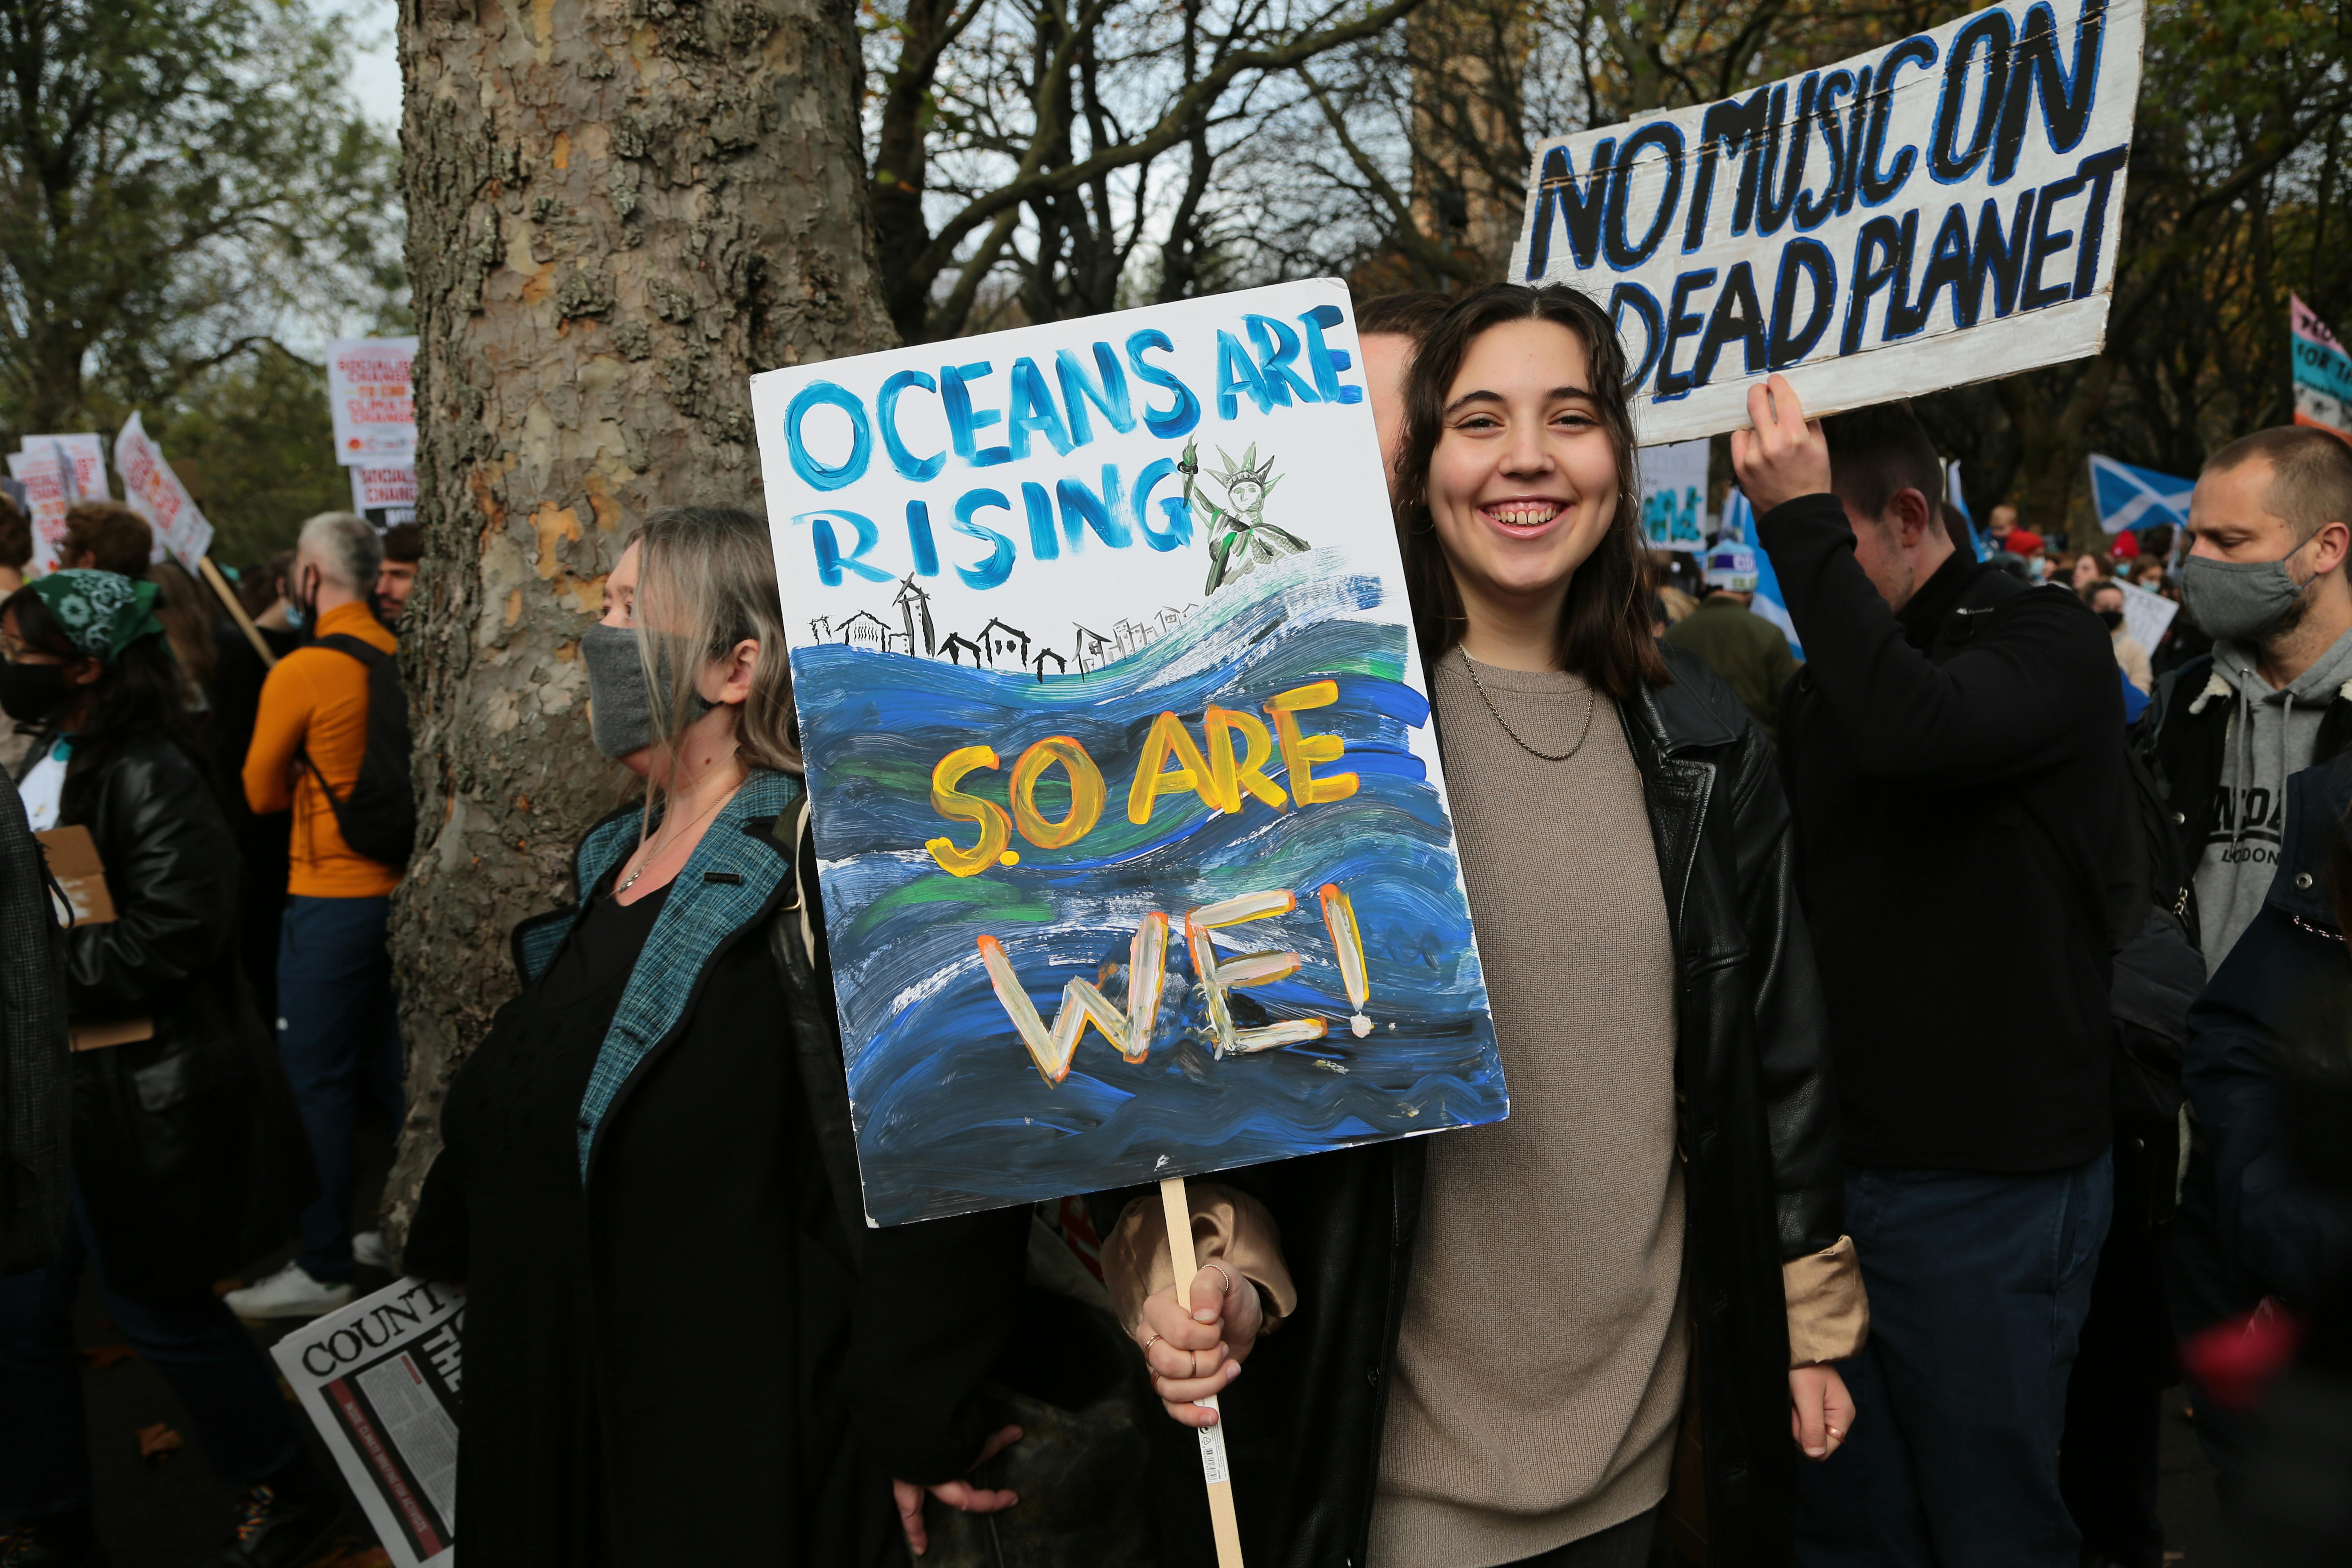 Scozia, 2021: a Glasgow, migliaia di persone prendono parte alla manifestazione Fridays for Future organizzata nell'ambito dell'incontro delle Nazioni Unite - Climate Change Conference (COP26).